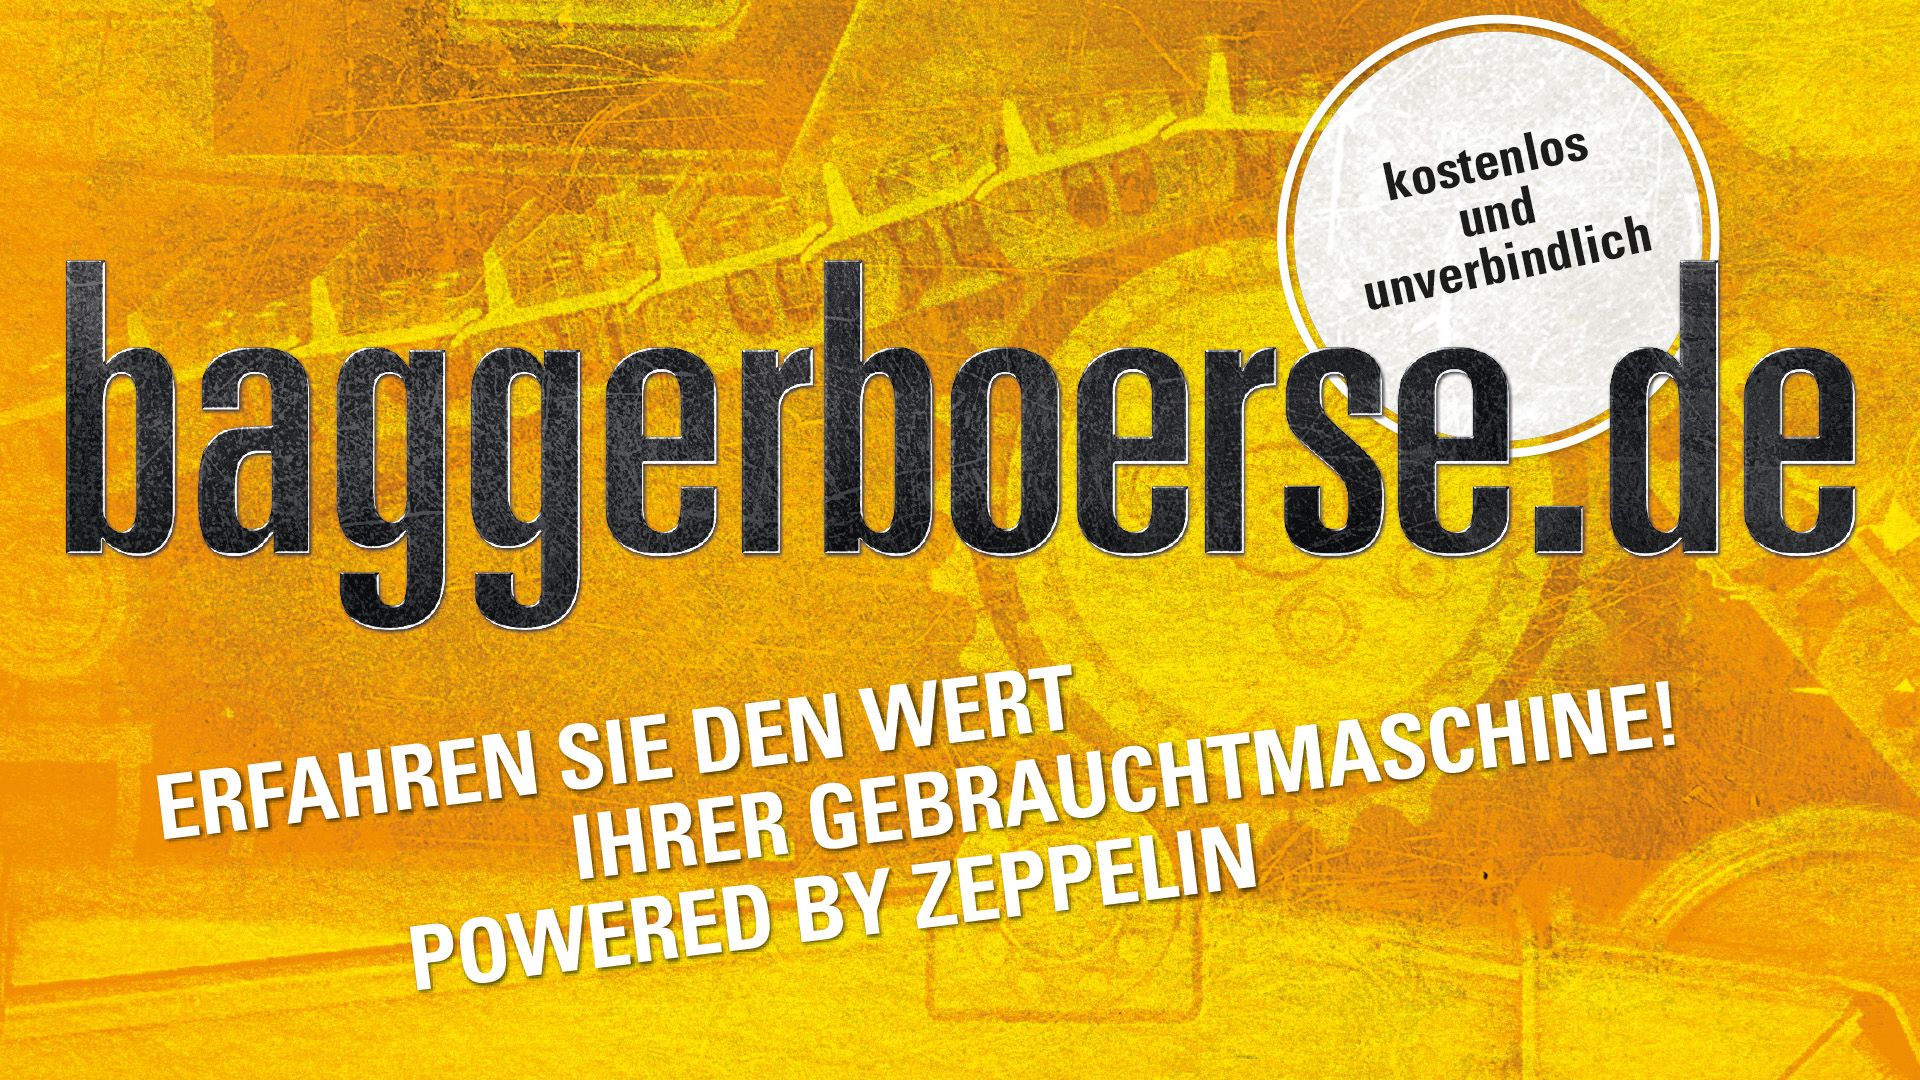 Baggerboerse (002).jpg